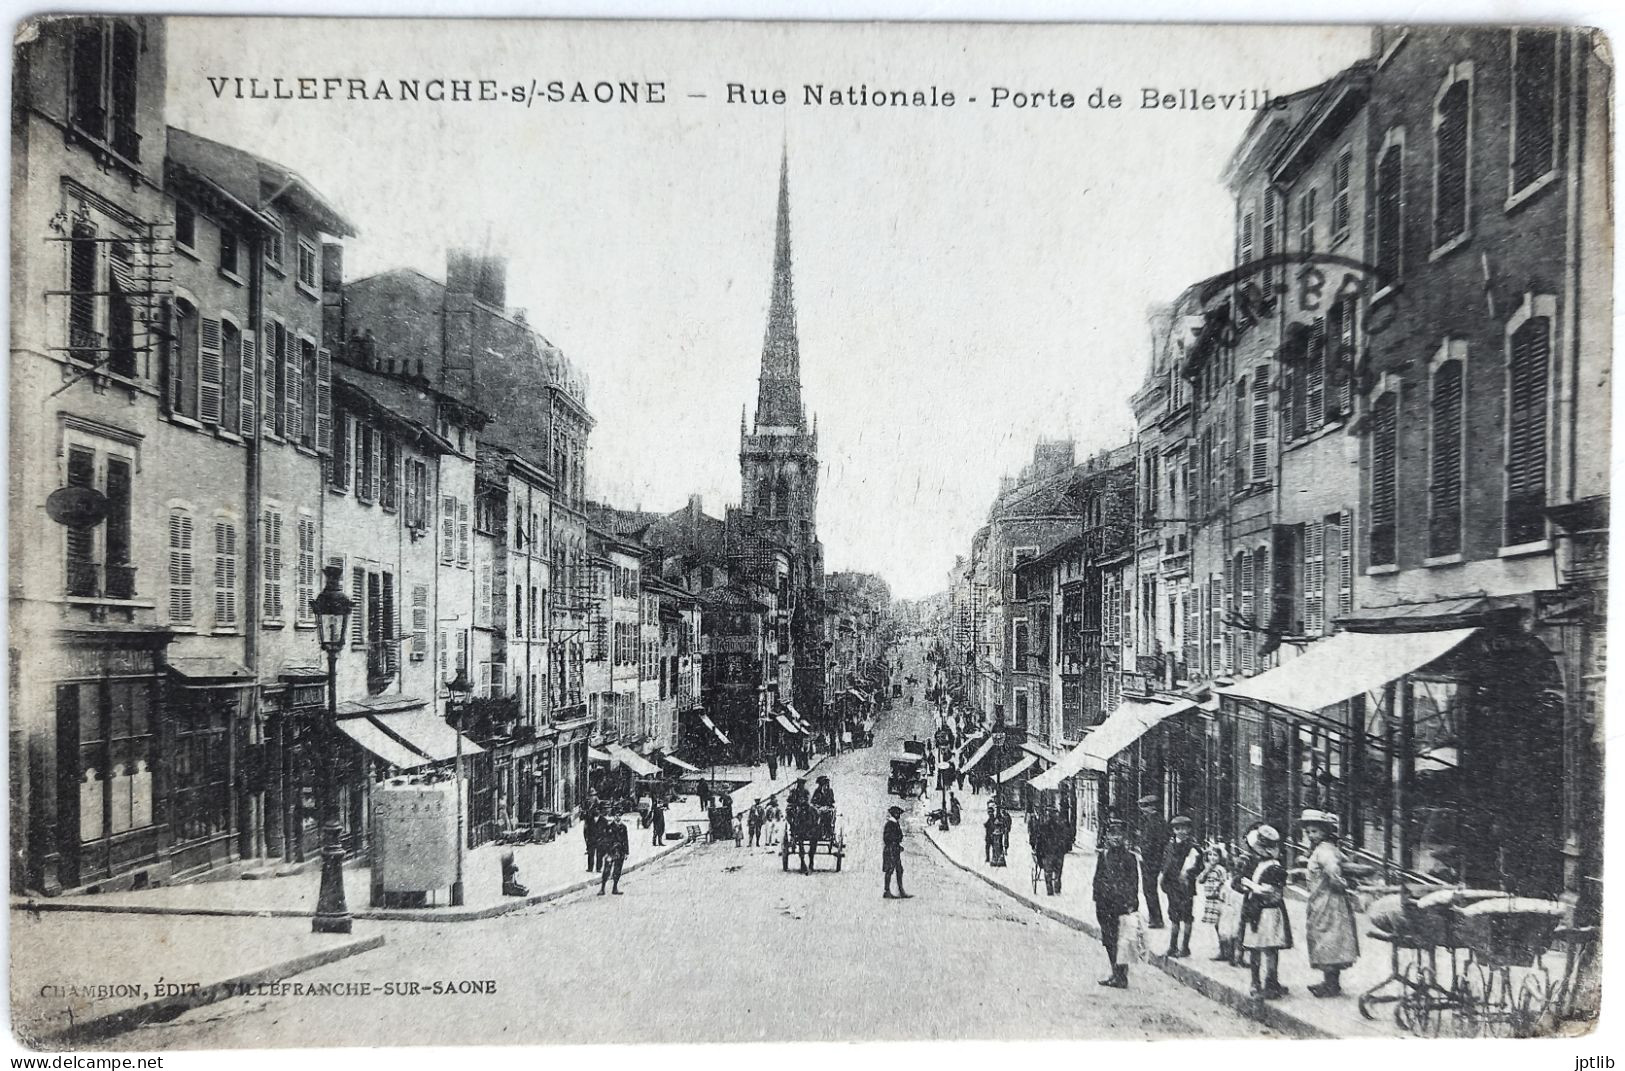 CPA Carte Postale / 69 Rhône, Villefranche-sur-Saône / Chambion, Édit. / Rue Nationale - Porte De Belleville. - Villefranche-sur-Saone